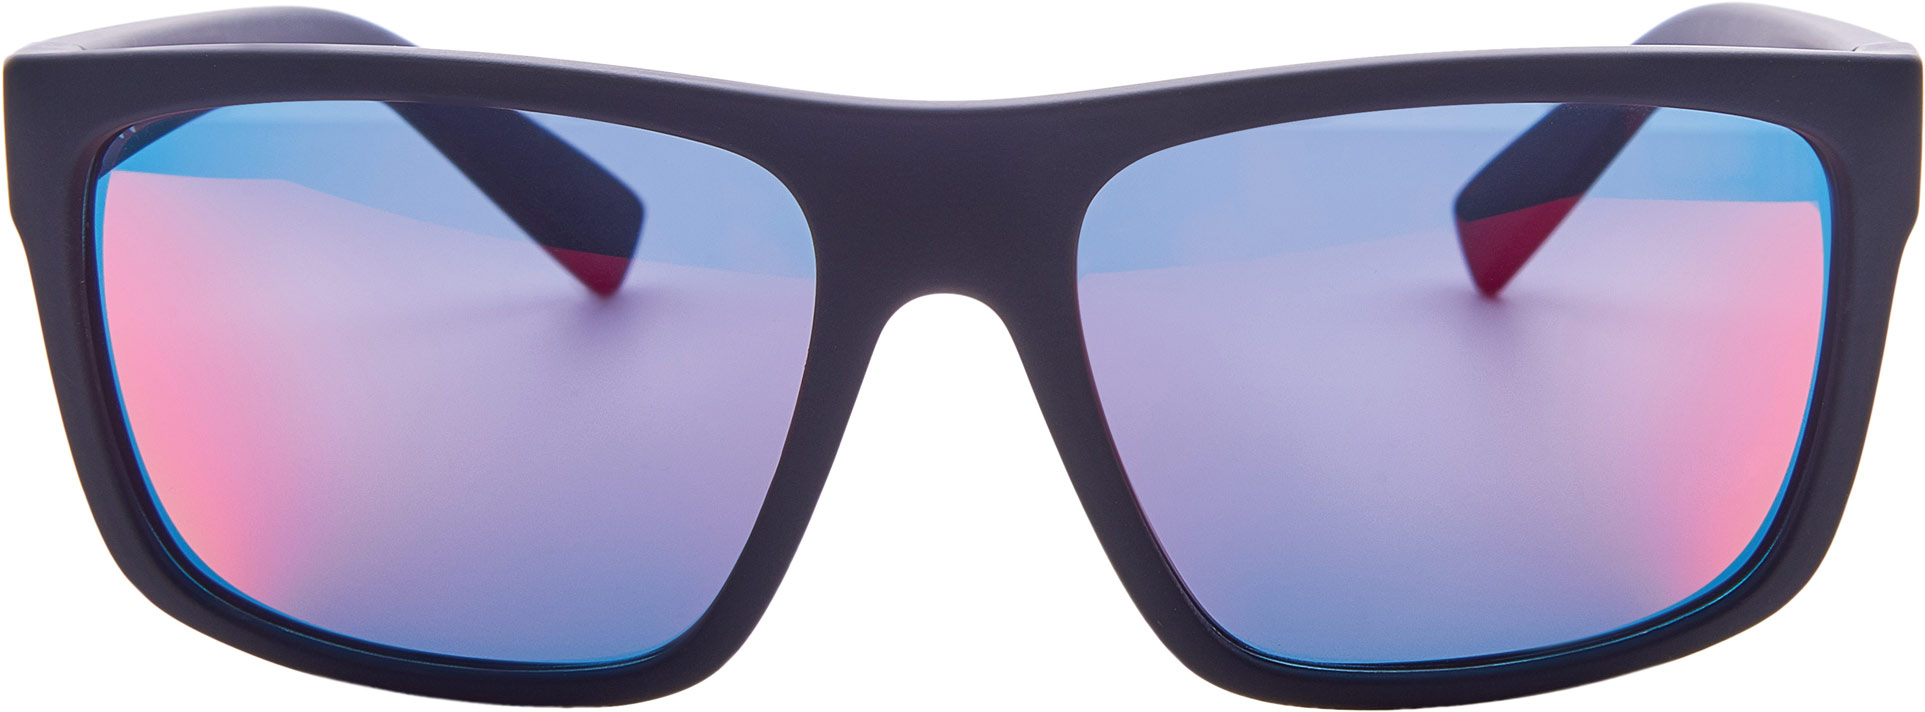 Men’s polycarbonate sunglasses